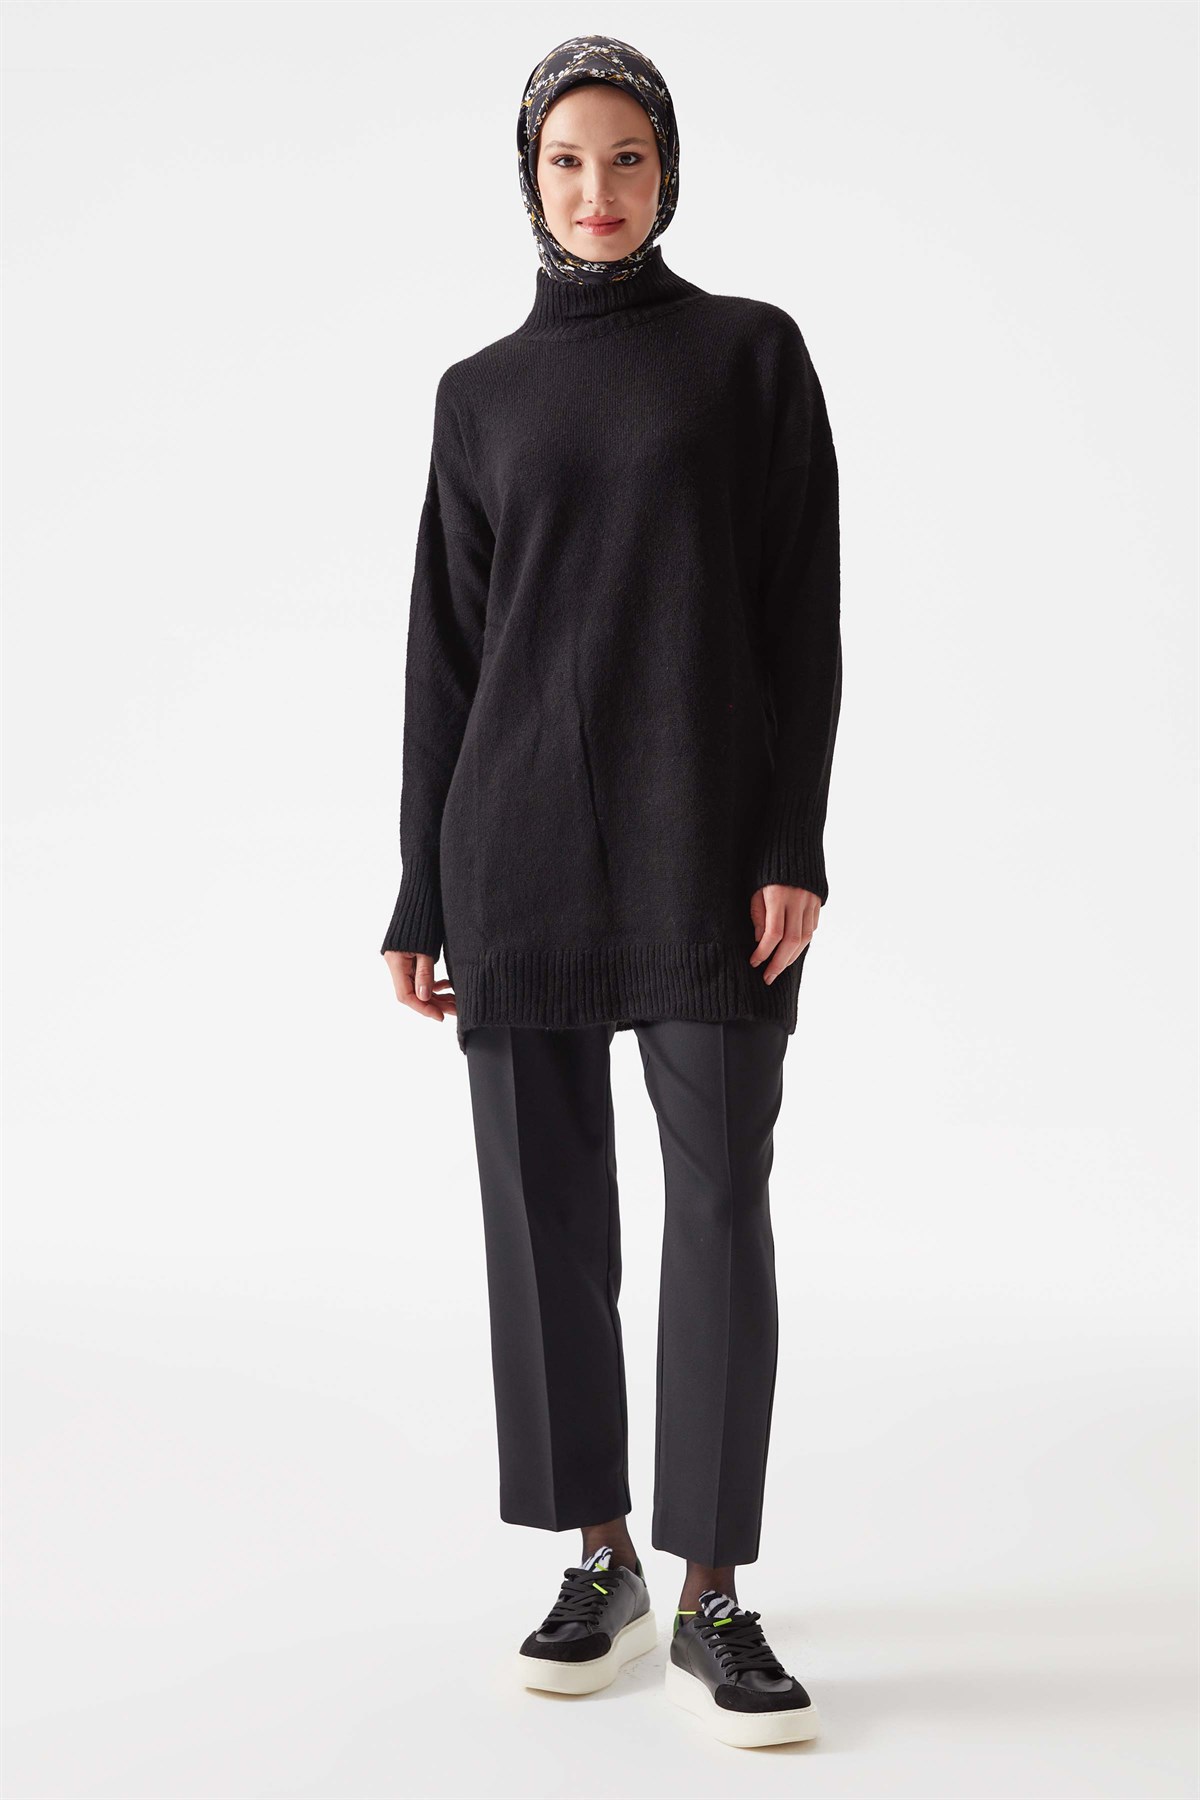 T Sleeve Turtleneck Knitwear Tunic - Black